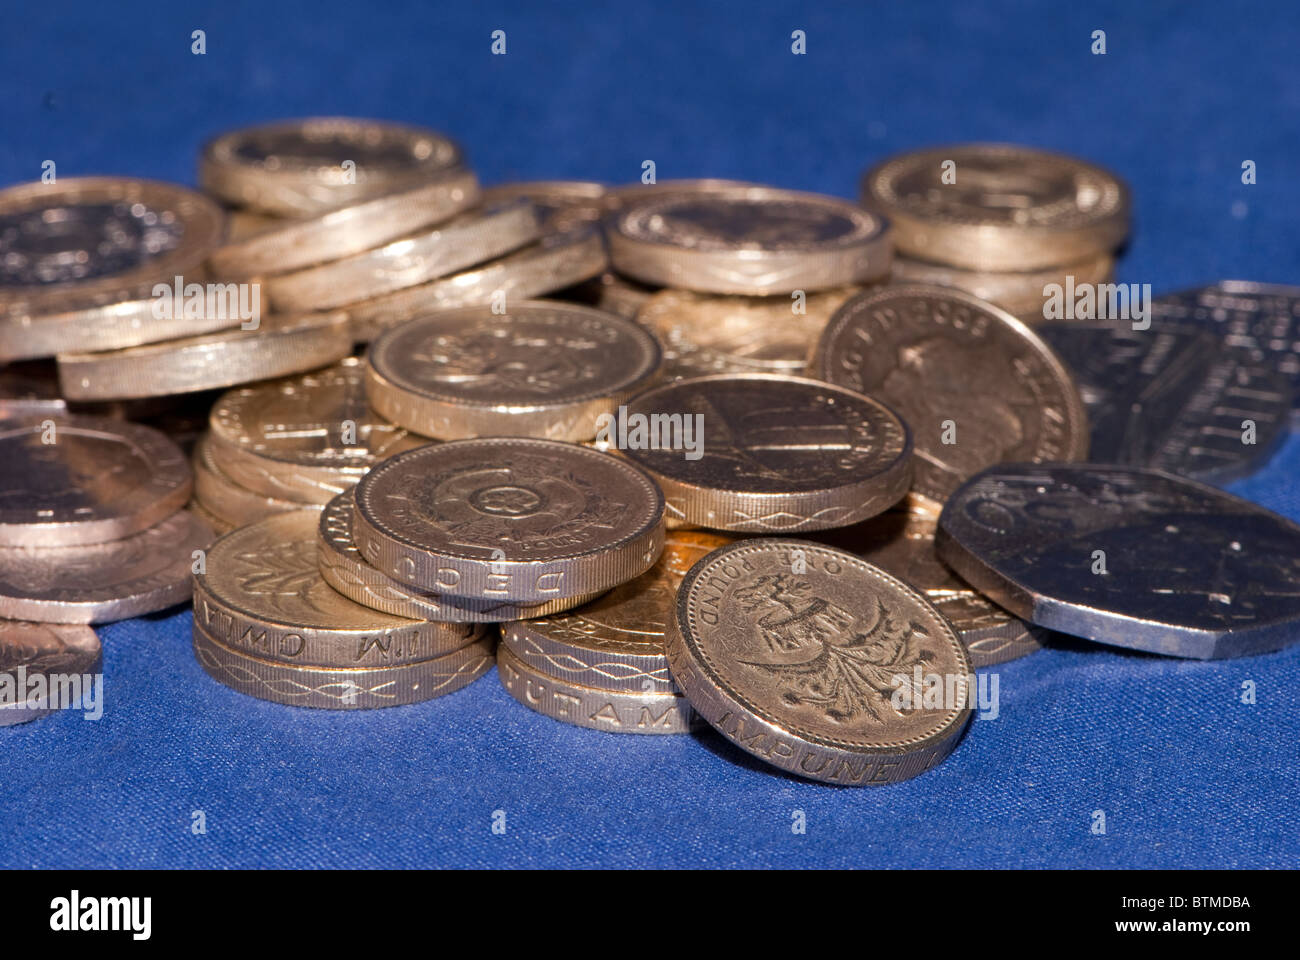 Photos du Royaume-uni monnaie, monnaies et billets Banque D'Images